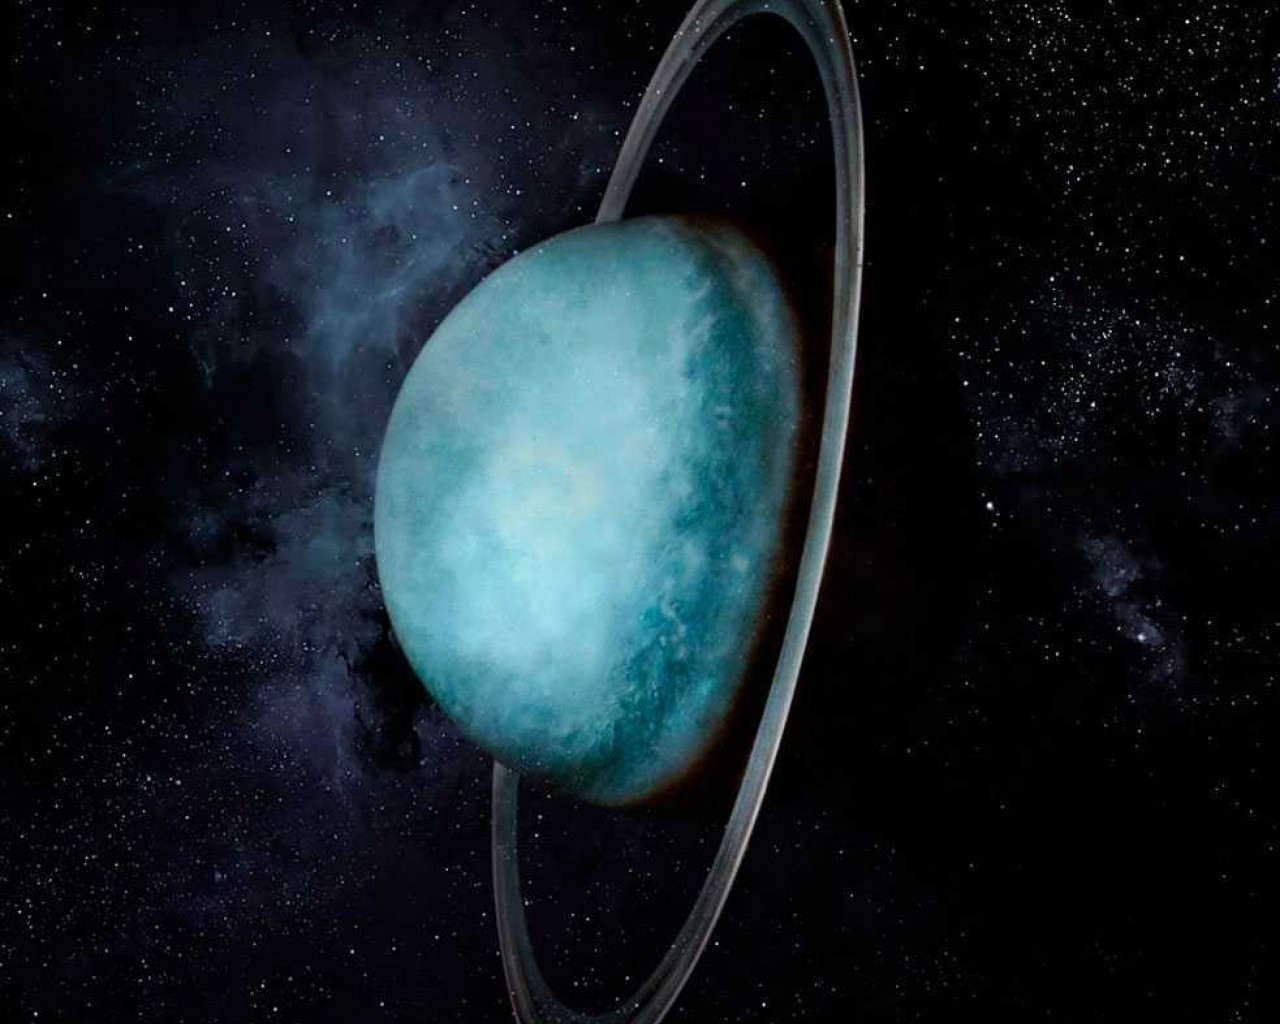 Уран - седьмая планета Солнечной системы, загадочный гигант с хромосферой раскраски в небесных тонах